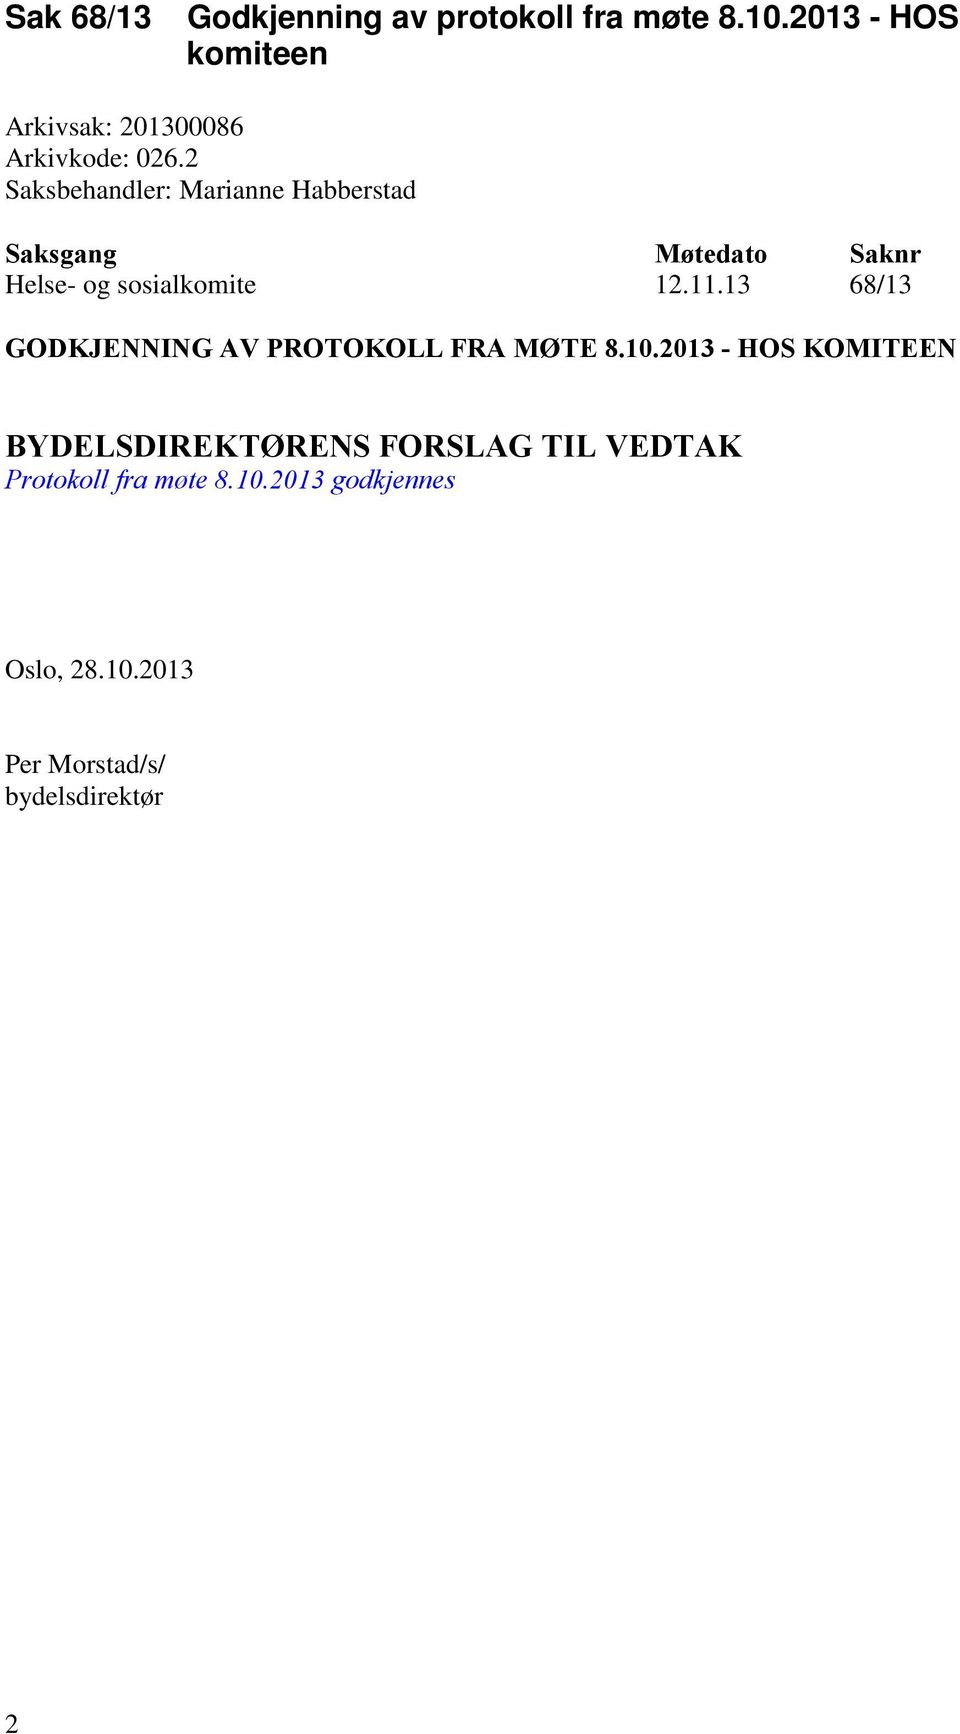 2 Saksbehandler: Marianne Habberstad Saksgang Møtedato Saknr Helse- og sosialkomite 12.11.